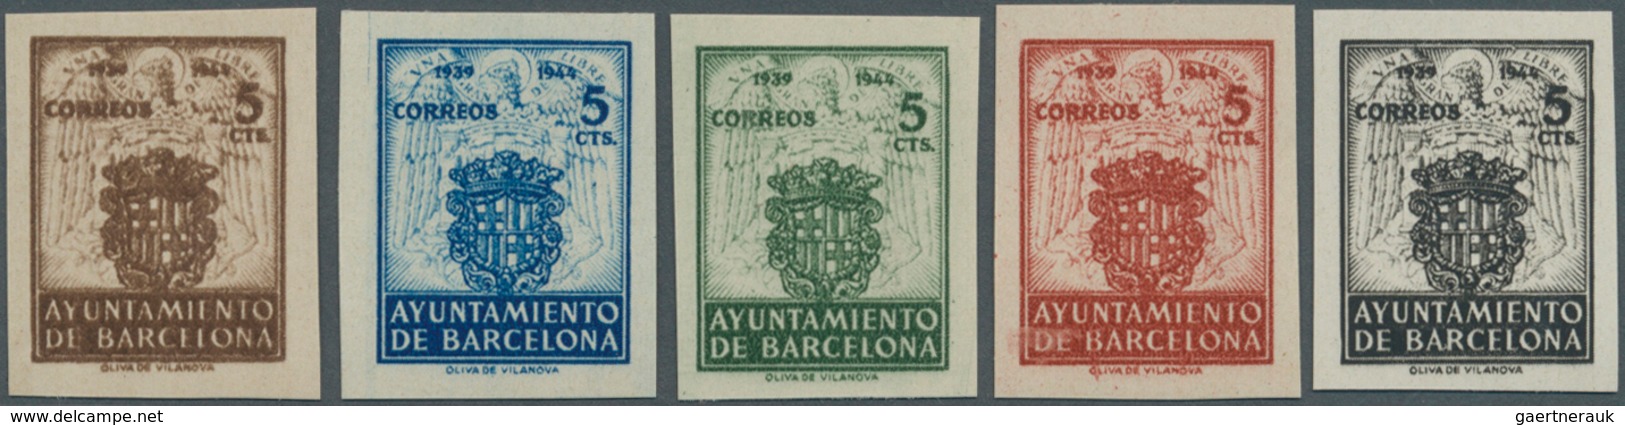 Spanien - Zwangszuschlagsmarken Für Barcelona: 1944, Coat Of Arms Set Of Five IMPERFORATE 5c. Stamps - Impuestos De Guerra